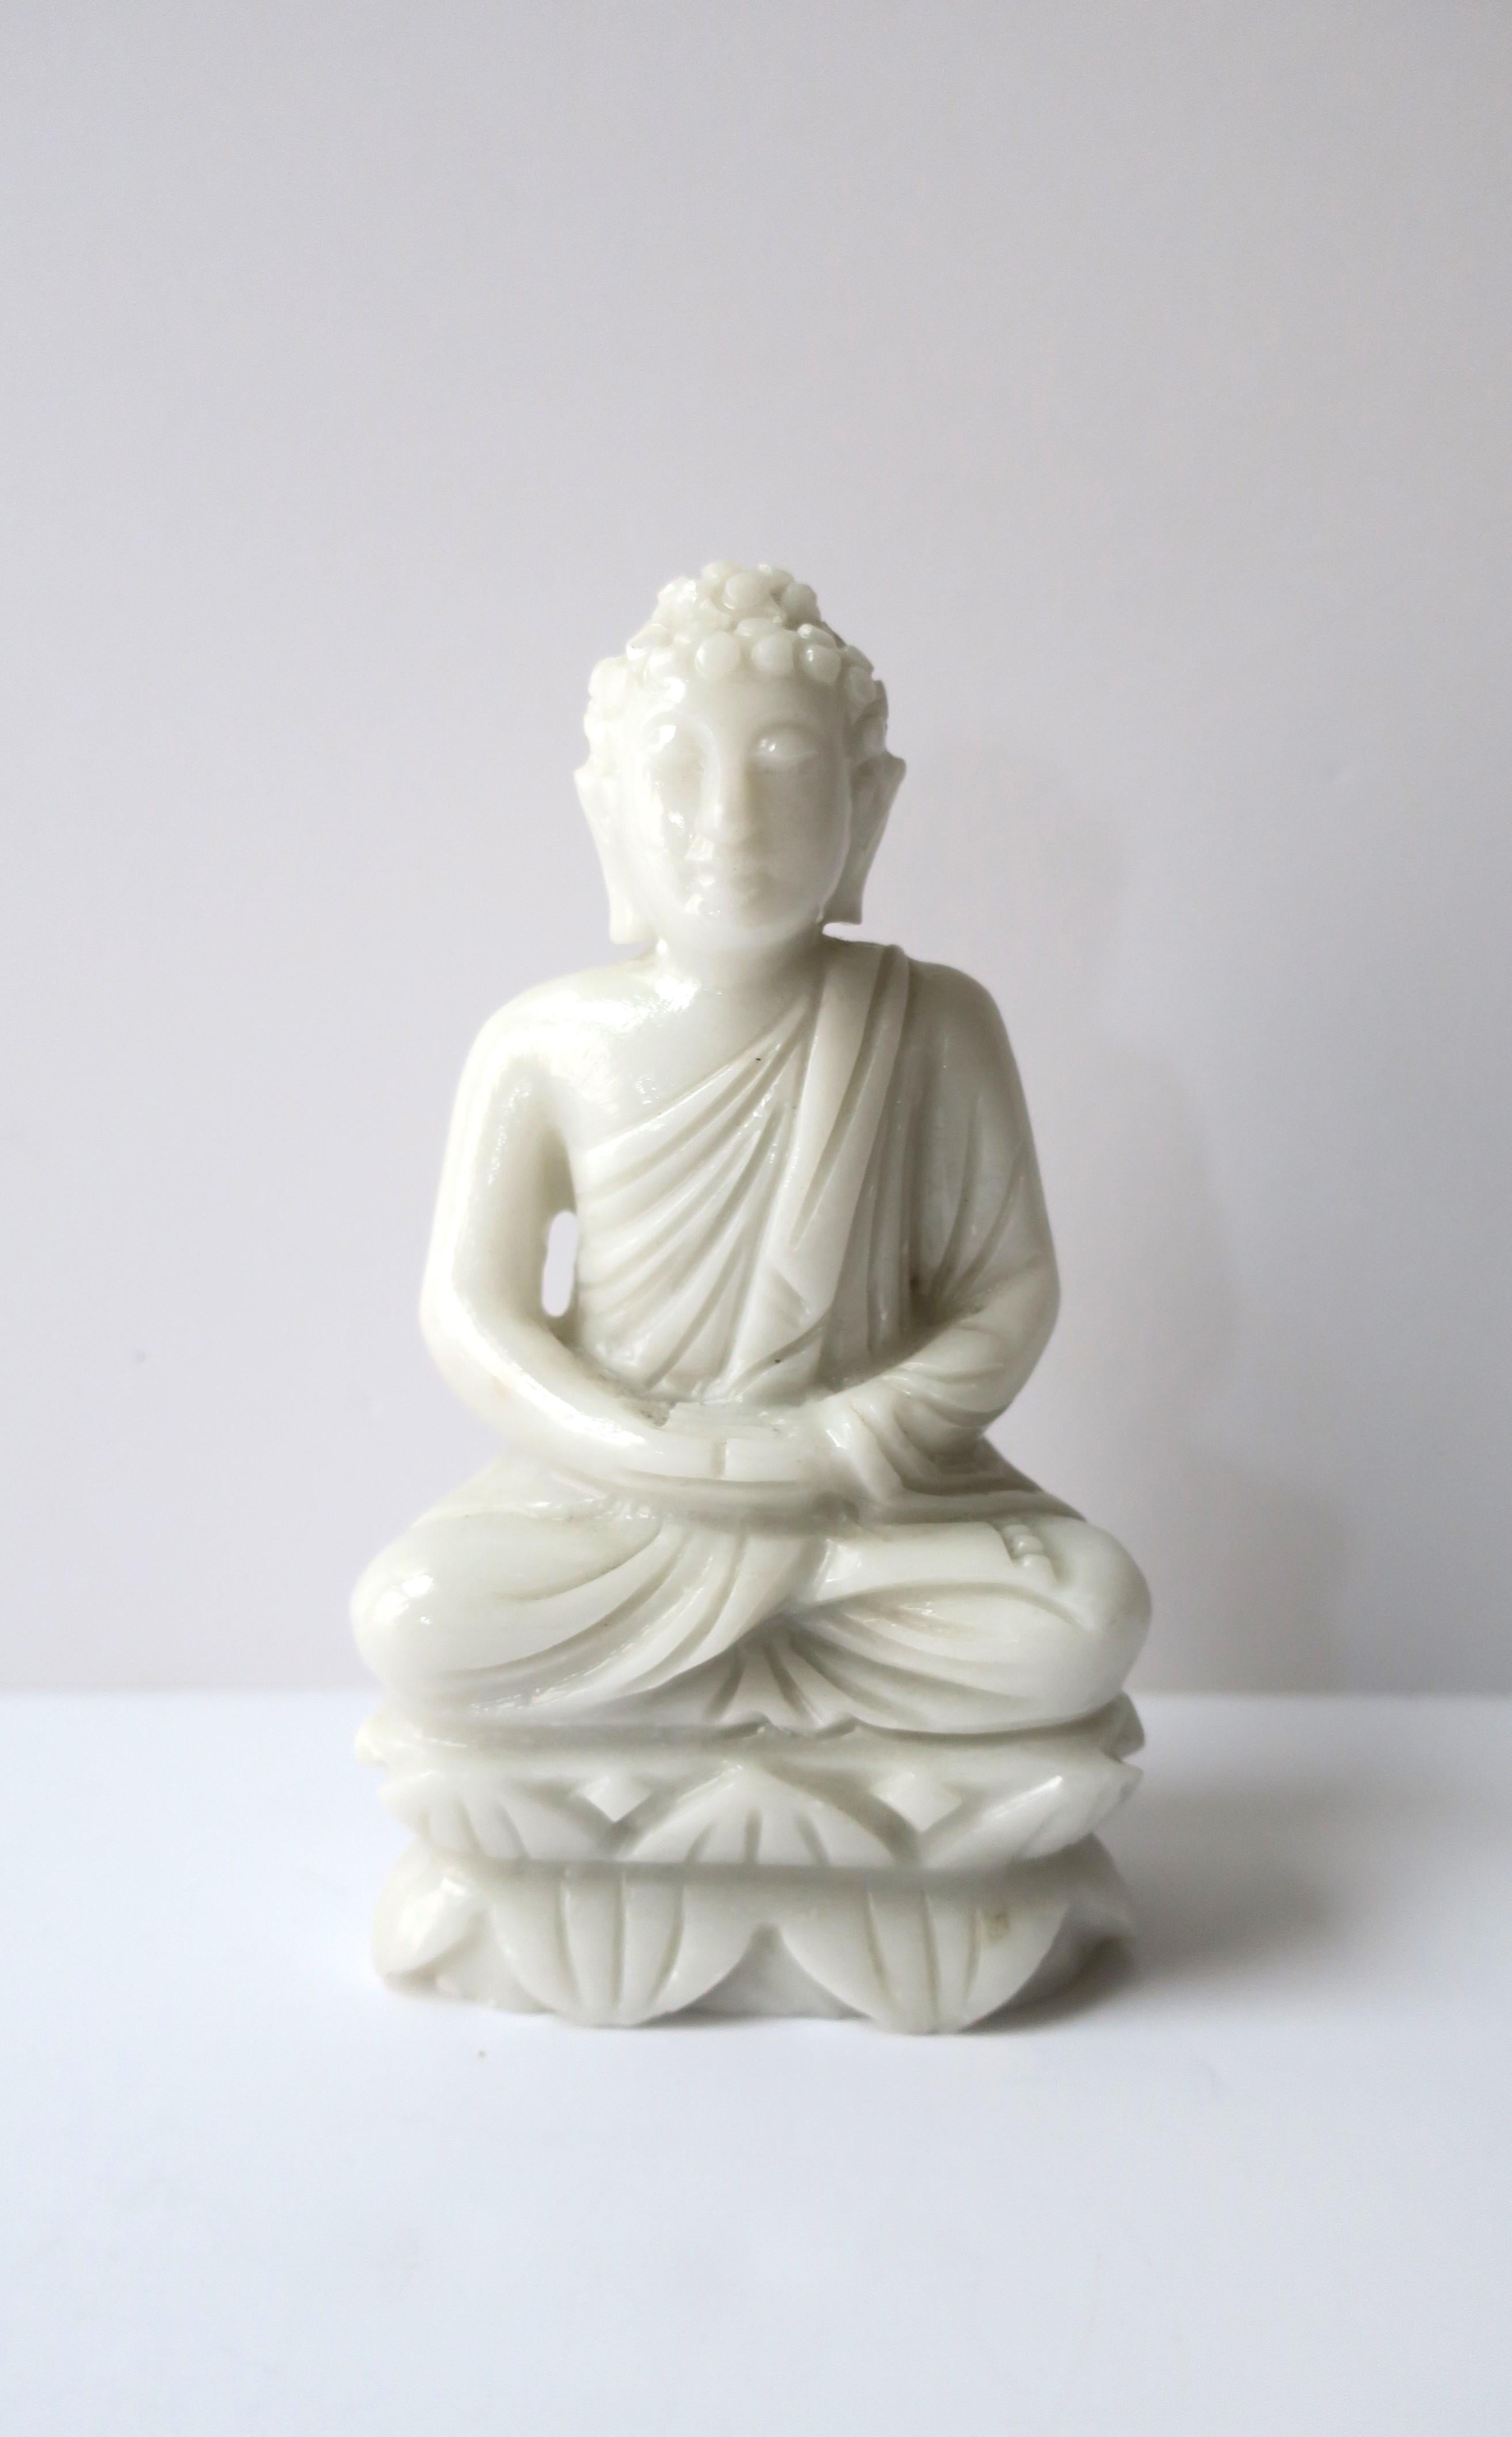 Statue de Bouddha en verre au lait, assise en position de méditation, avec des feuilles de lotus entourant la base, vers le milieu du 20e siècle. Le bouddha présente plusieurs caractéristiques particulières, notamment de longs lobes d'oreille.